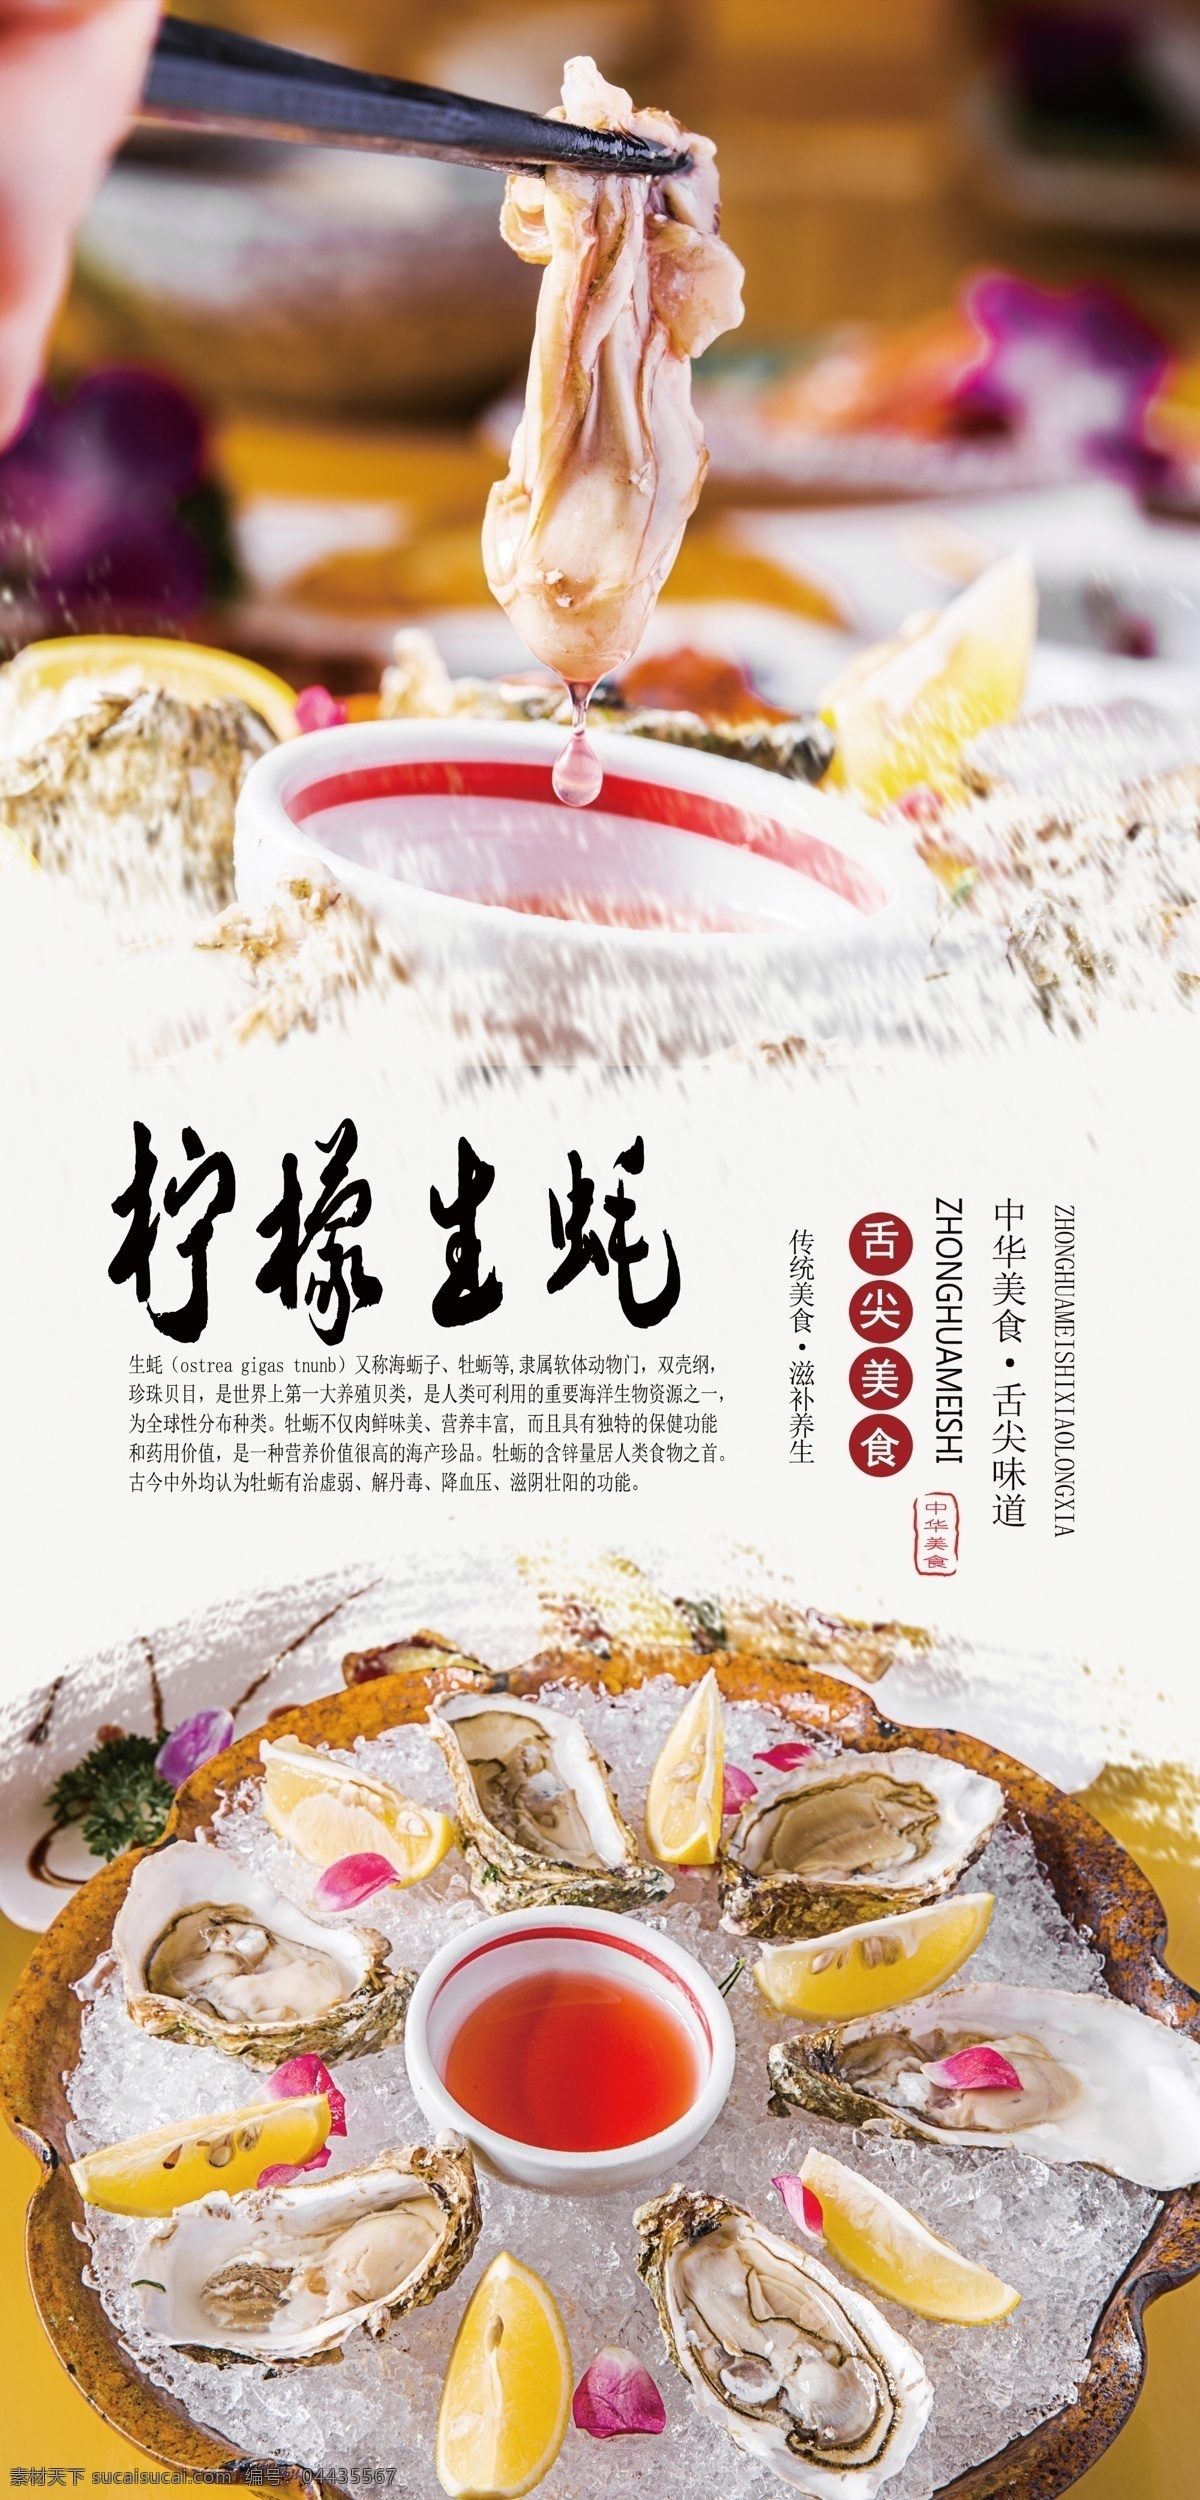 柠檬 生 蚝 分层 海报 生蚝 牡蛎 美食 美味 舌尖美食 中华美食 传统美食